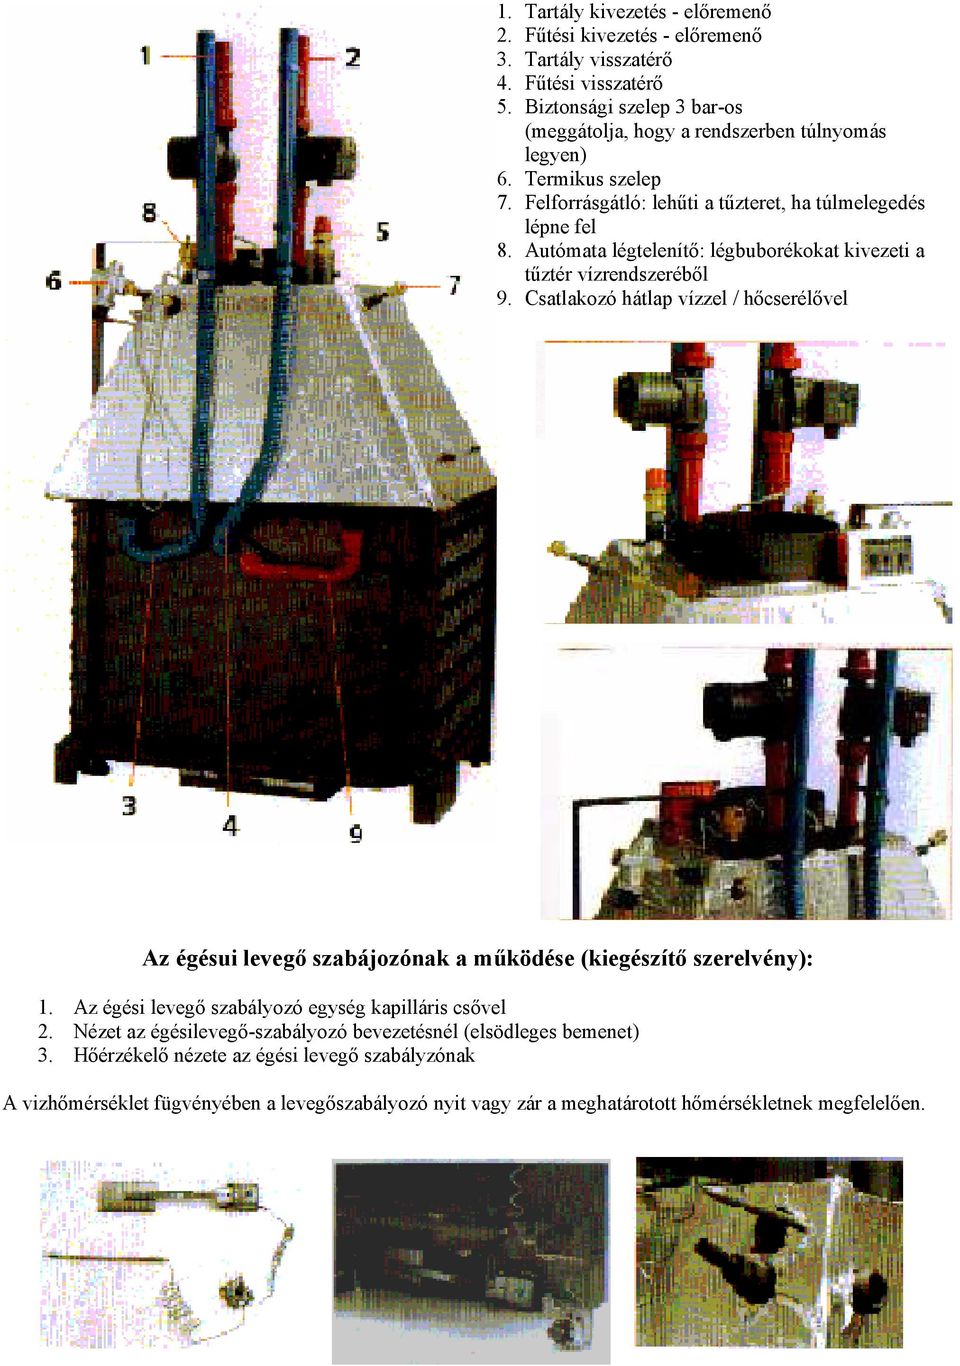 Autómata légtelenítő: légbuborékokat kivezeti a tűztér vízrendszeréből 9. Csatlakozó hátlap vízzel / hőcserélővel Az égésui levegő szabájozónak a működése (kiegészítő szerelvény): 1.